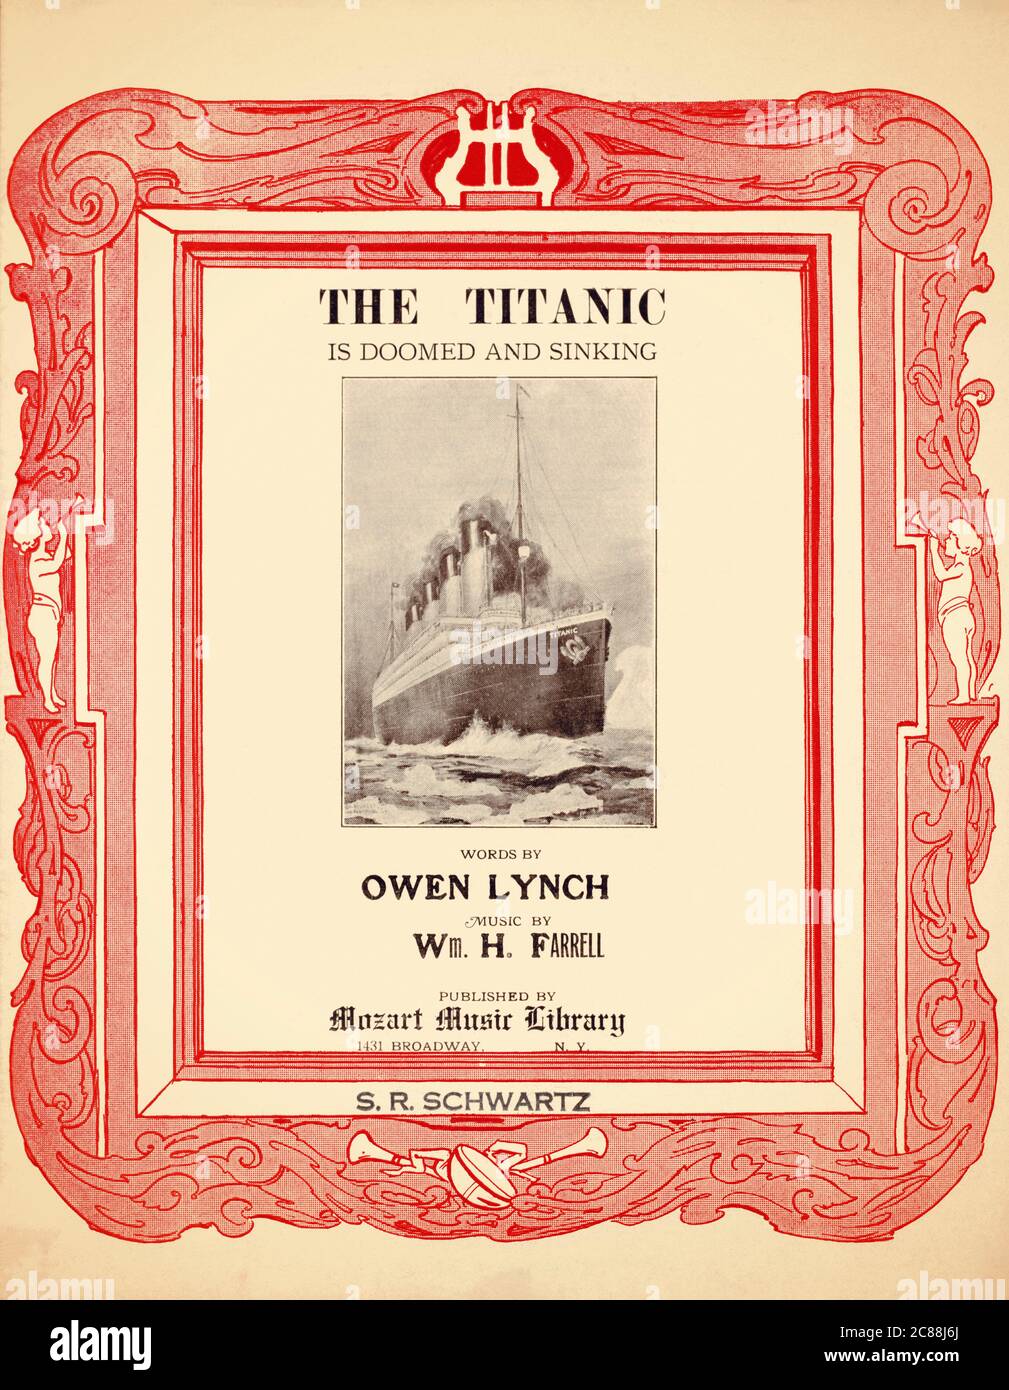 Couverture de la musique de fond, le Titanic est condamné et naufrain, publié à New York en 1912 dans les mois qui suivent le naufrage du navire. Banque D'Images